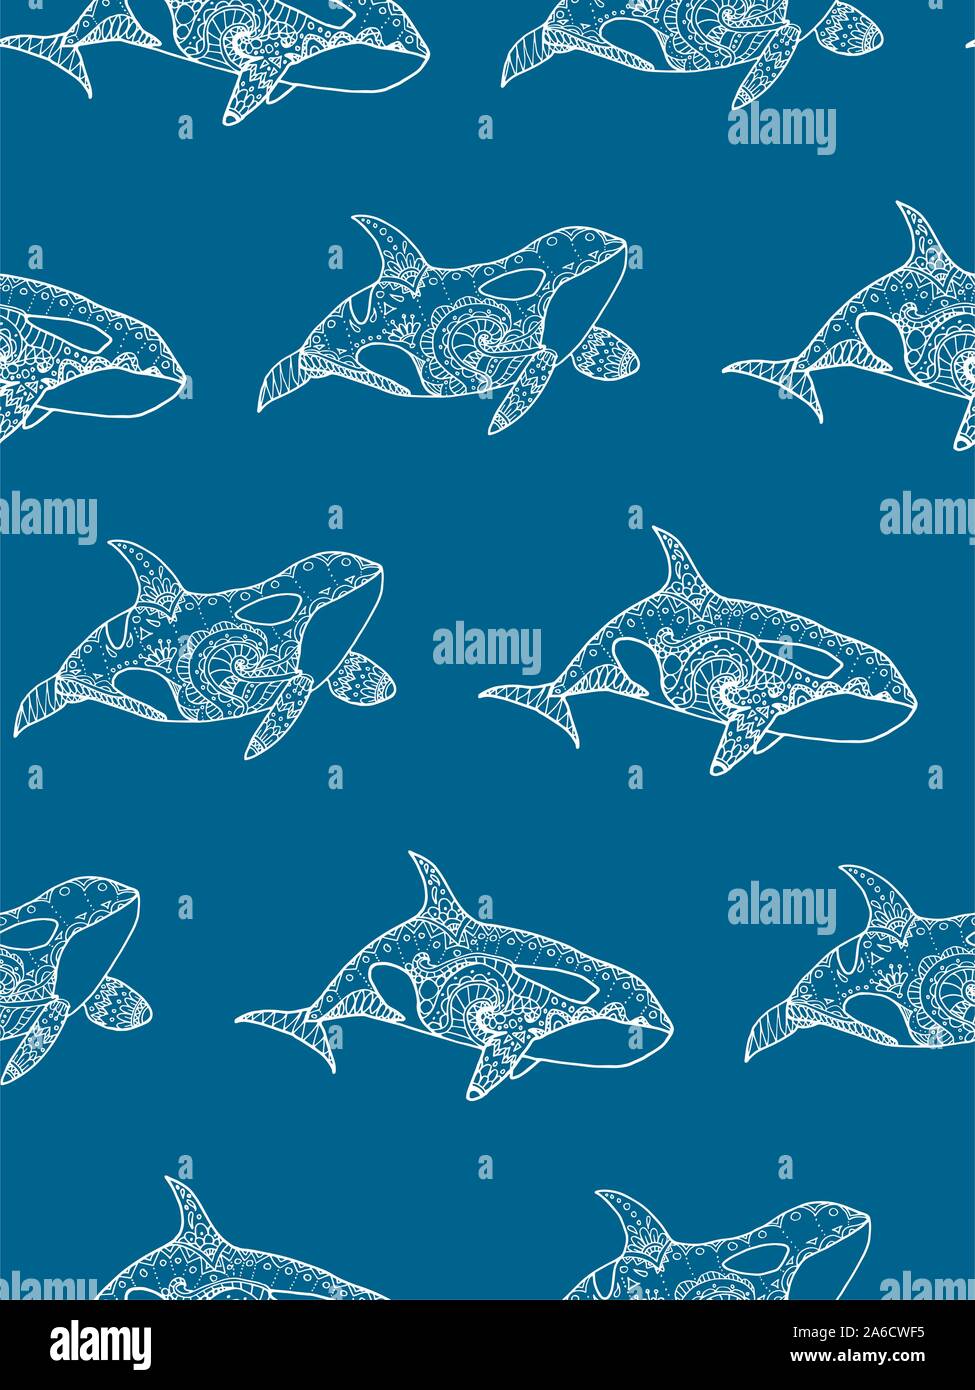 Illustrazione Vettoriale di pattern senza giunture dal disegno a mano modellato balena killer. Doodle Orca. Decorative sfondo marino Illustrazione Vettoriale